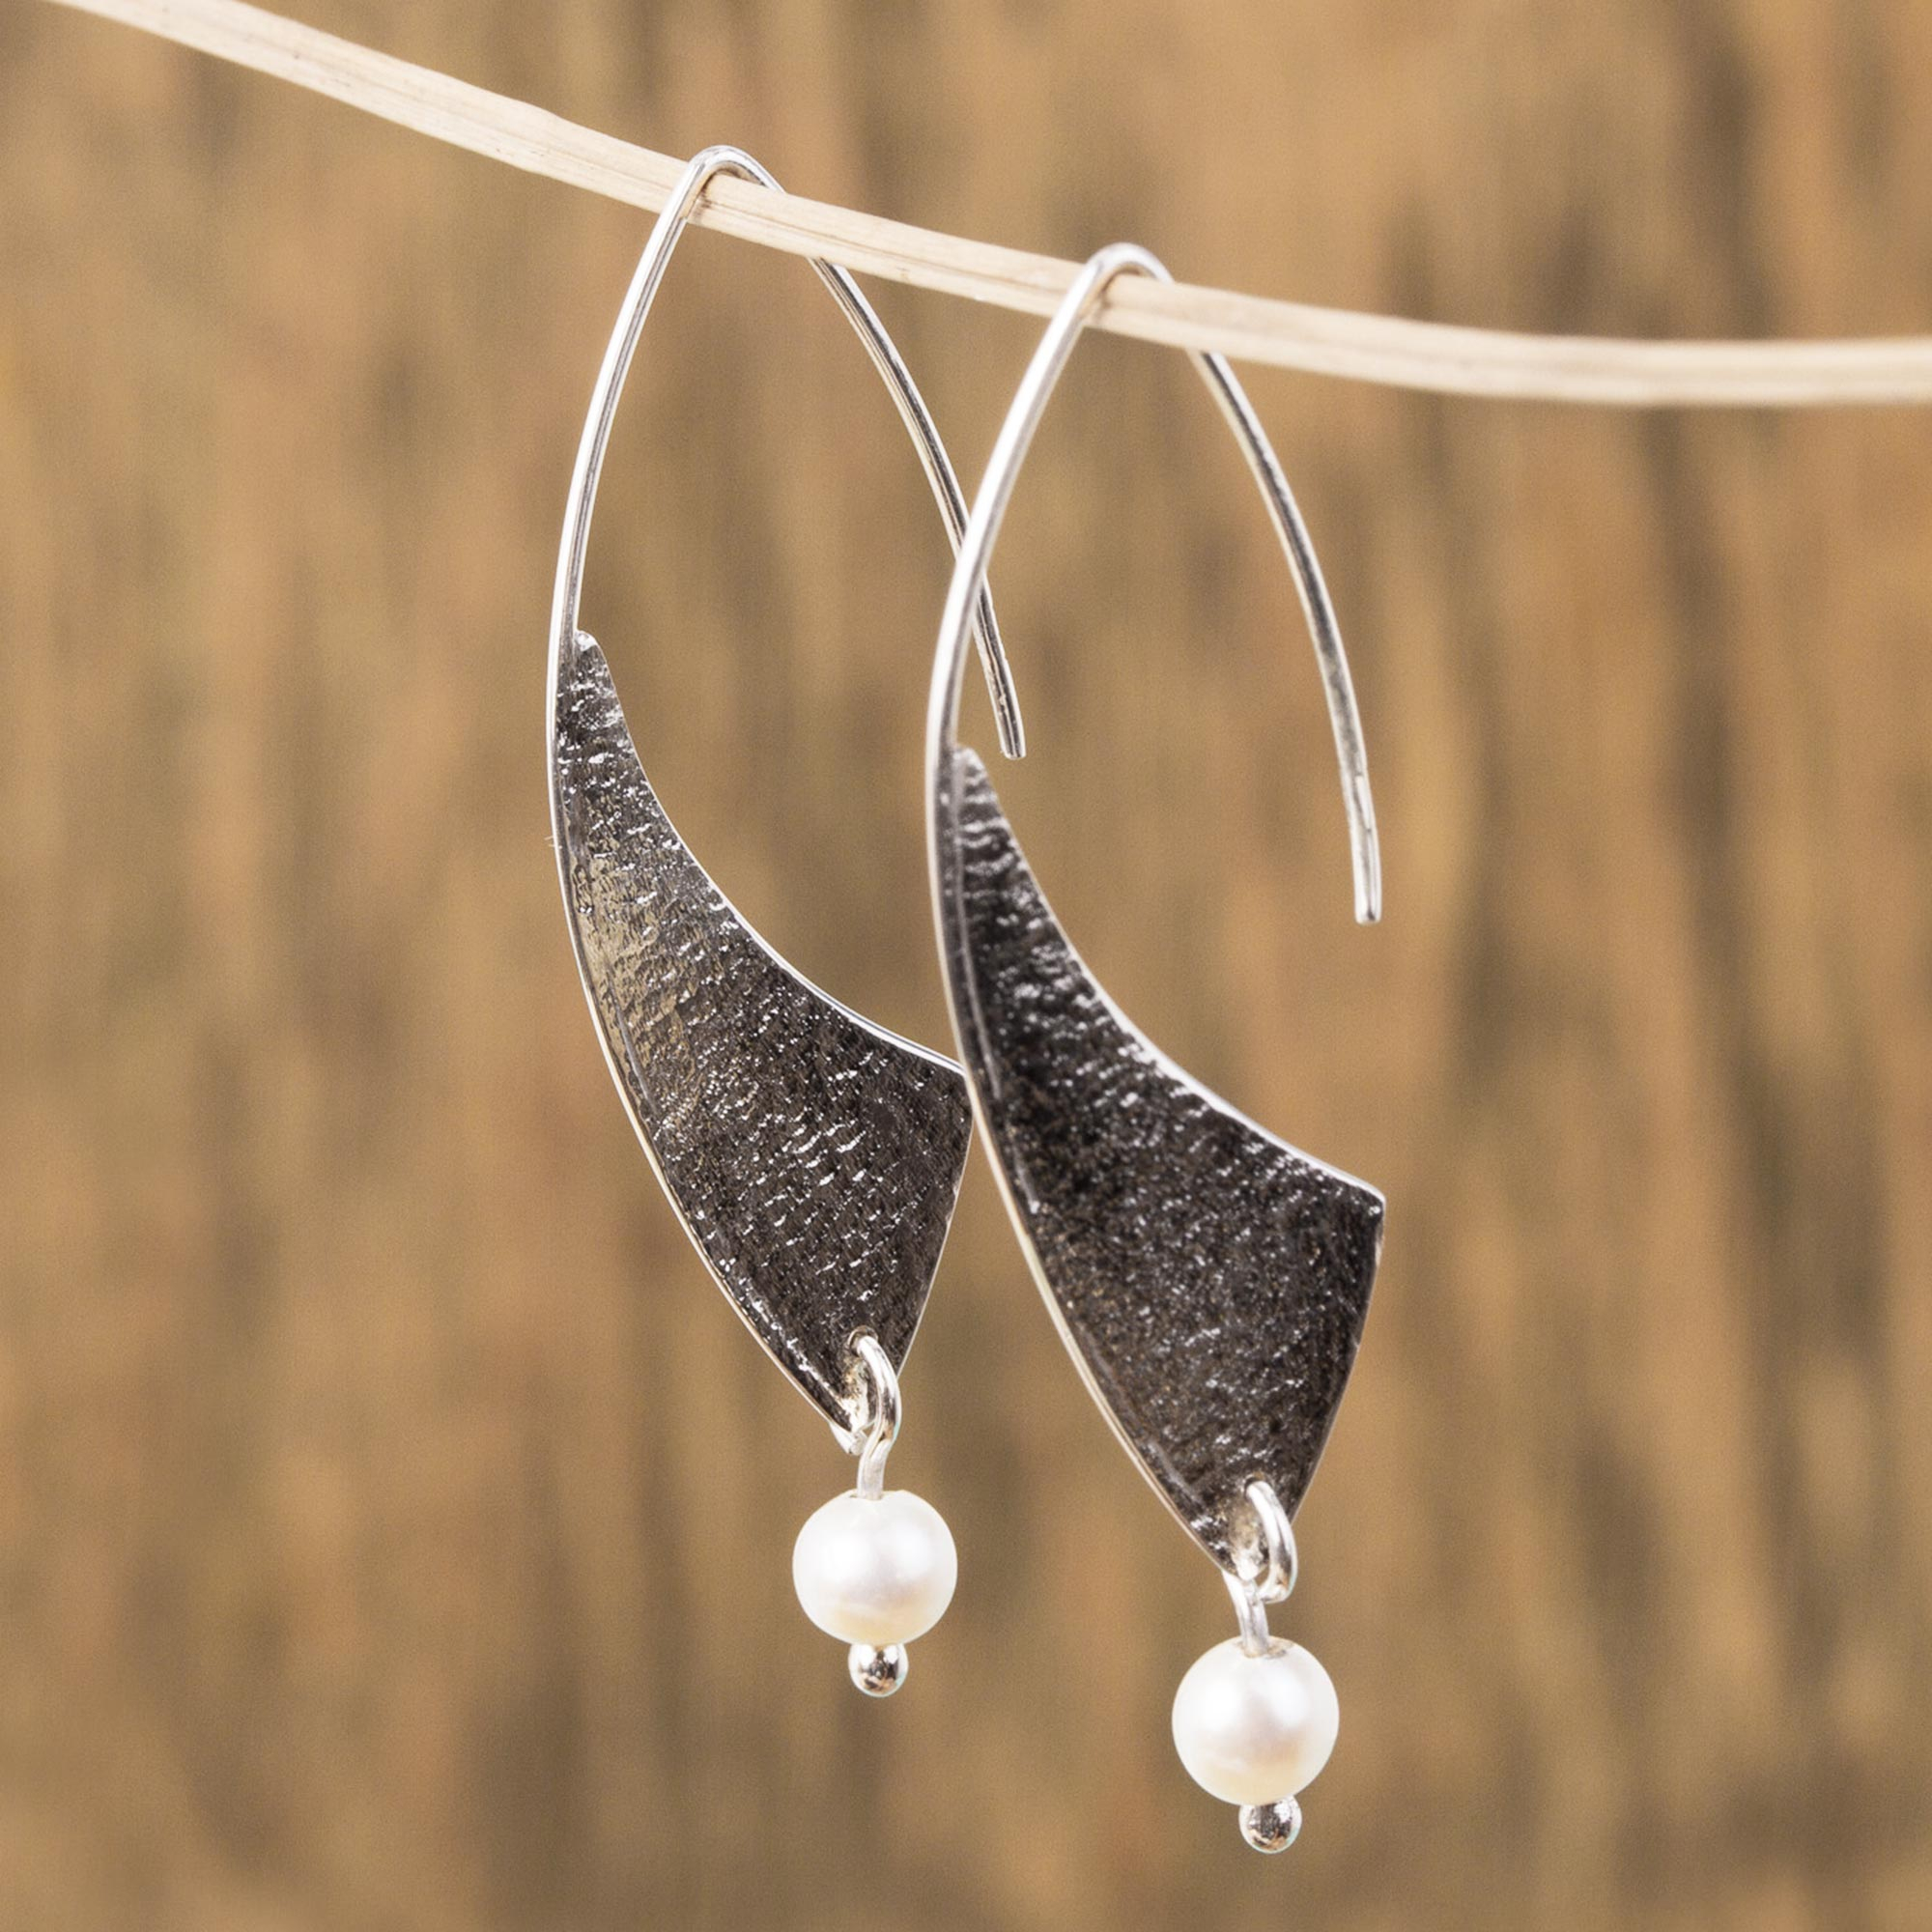 Artisan Earring Handmade Israeli Jewelry Textured Sterling Silver Earrings Gift for Her